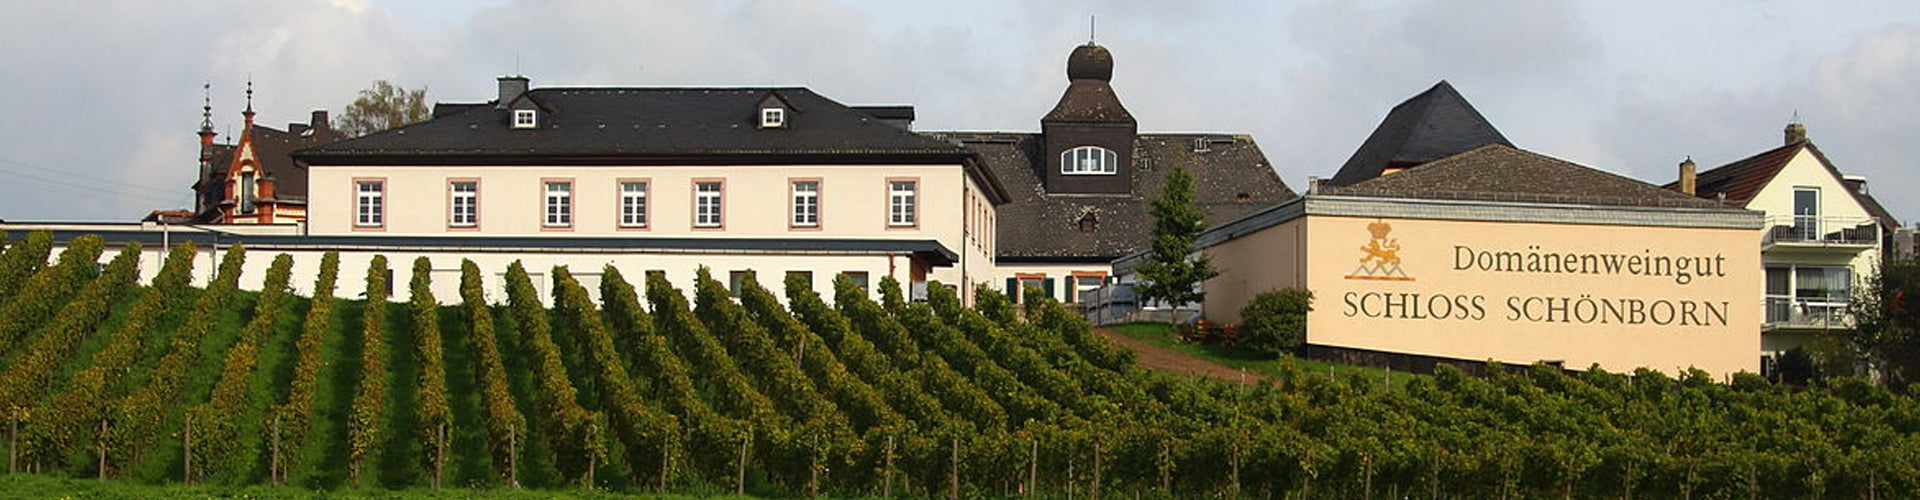 Schloss Schönborn Winery in the Rheingau